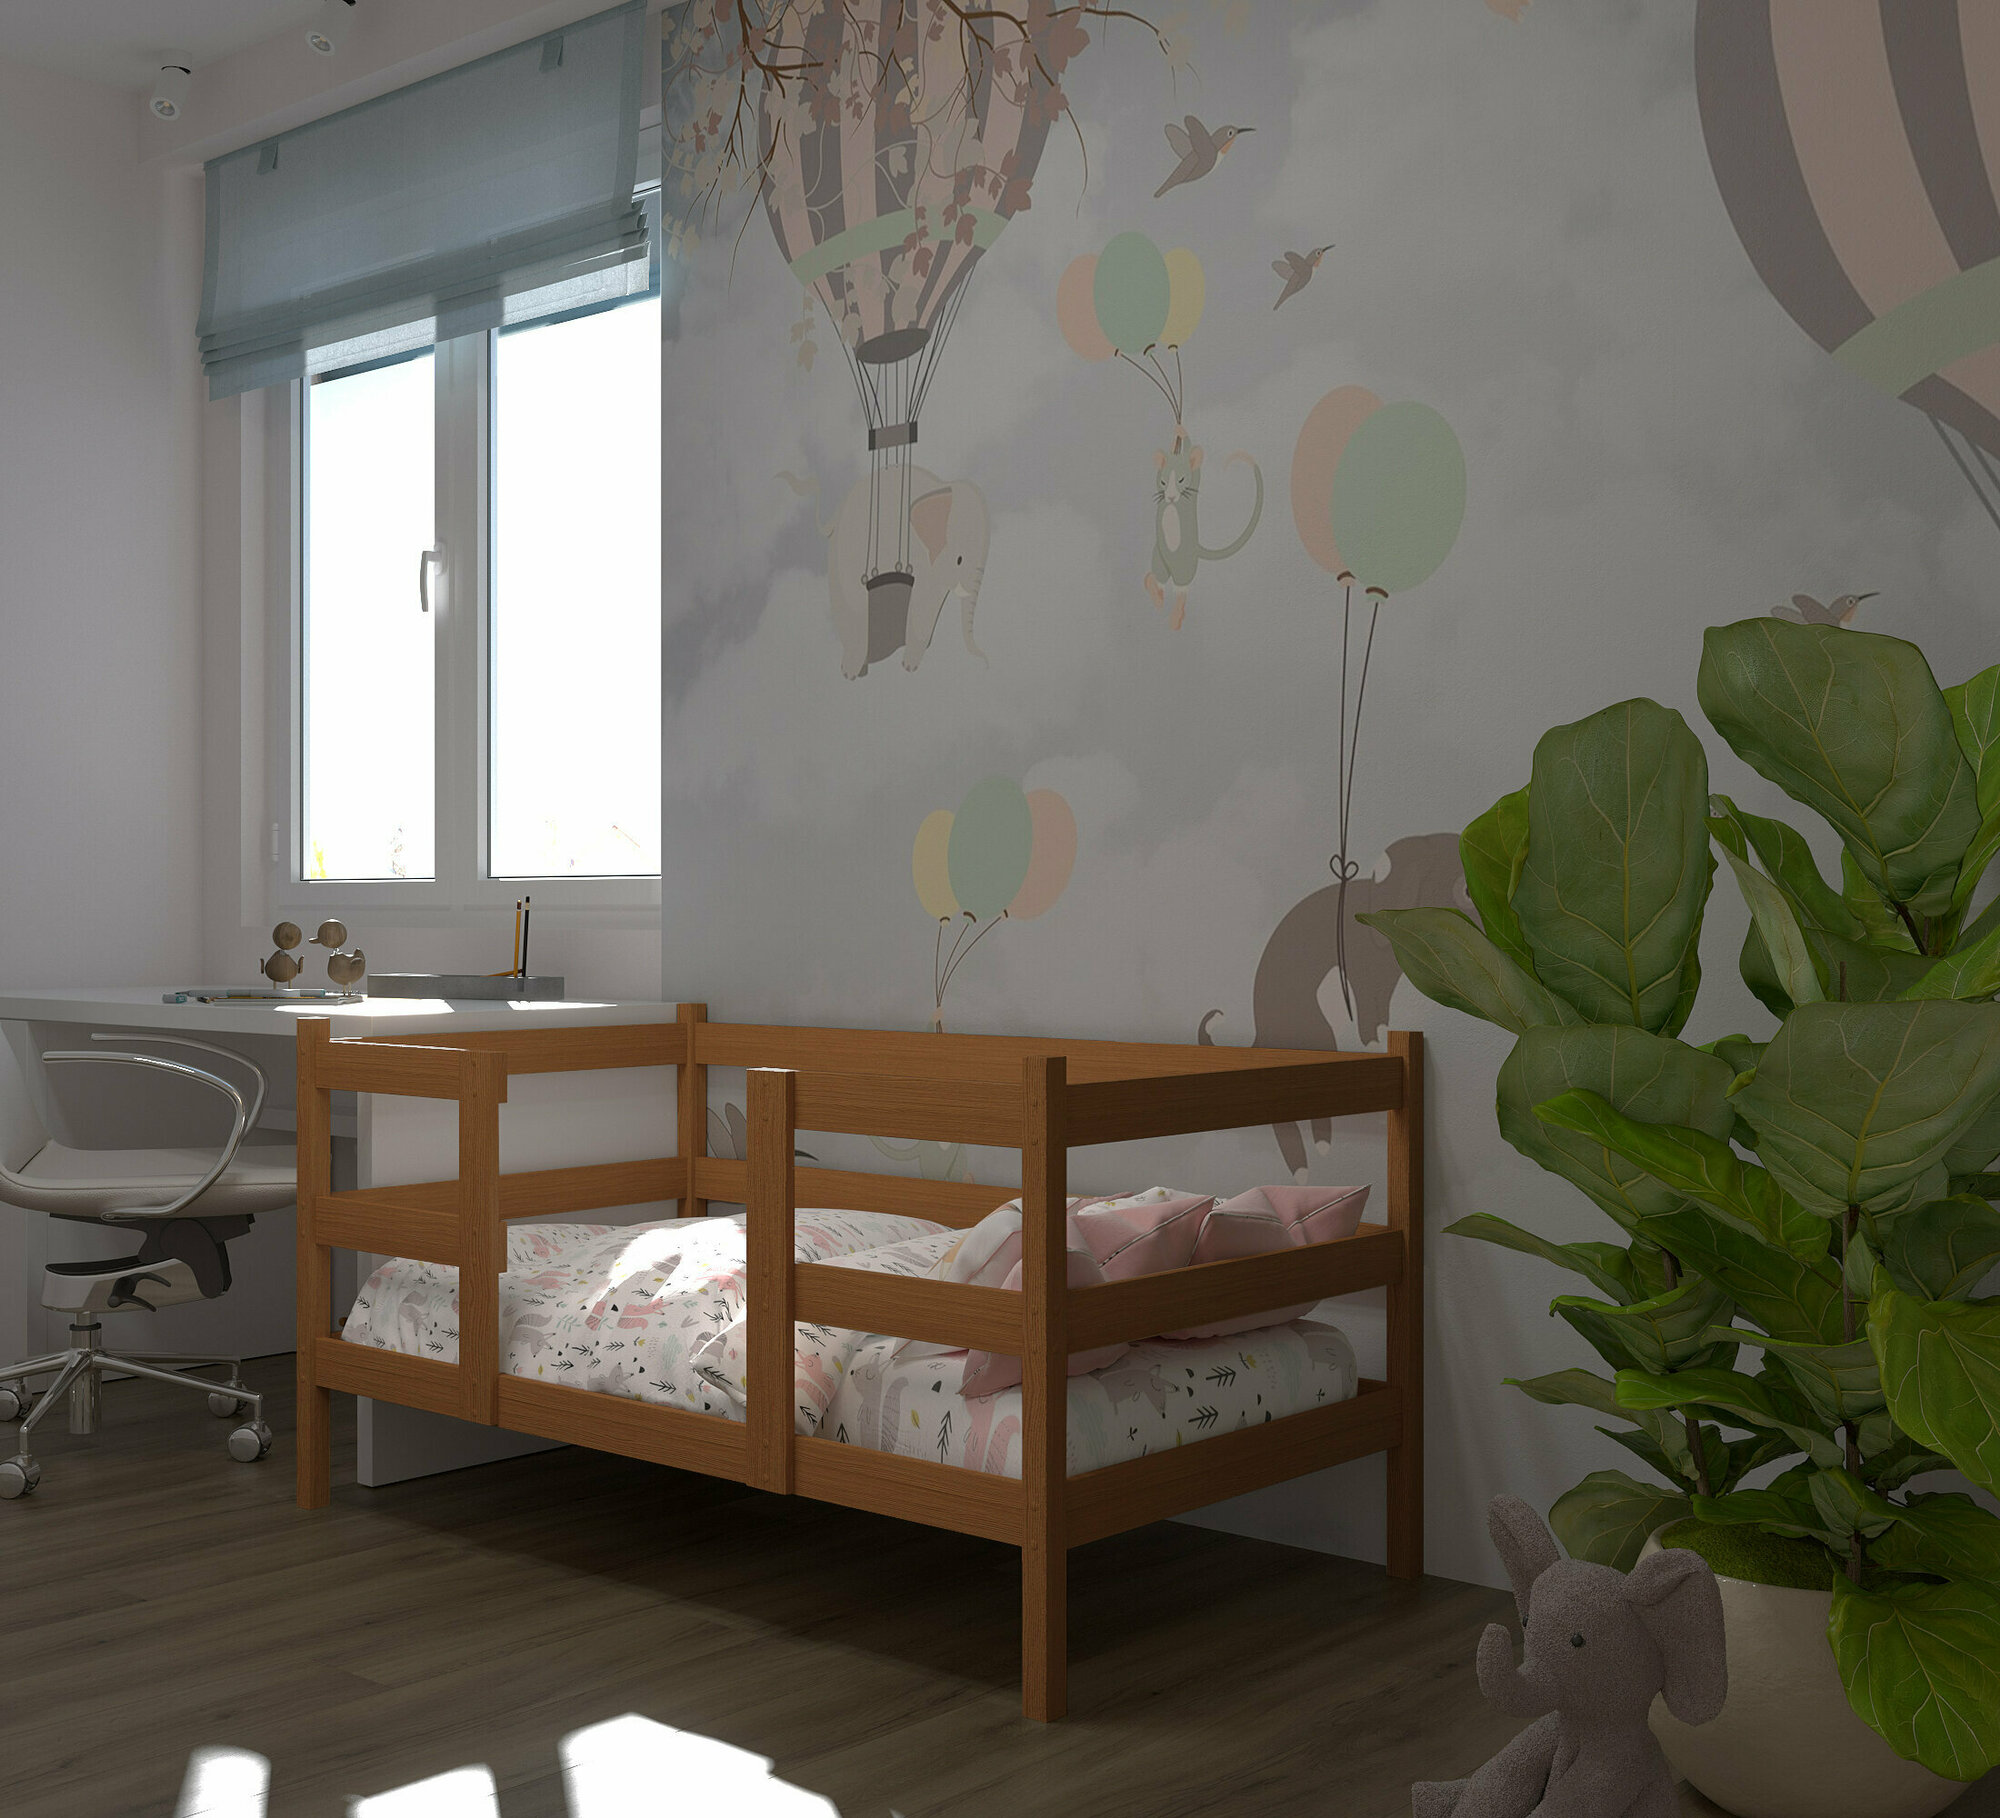 Кровать детская, подростковая "Кроха", спальное место 180х90, масло "Орех", из массива